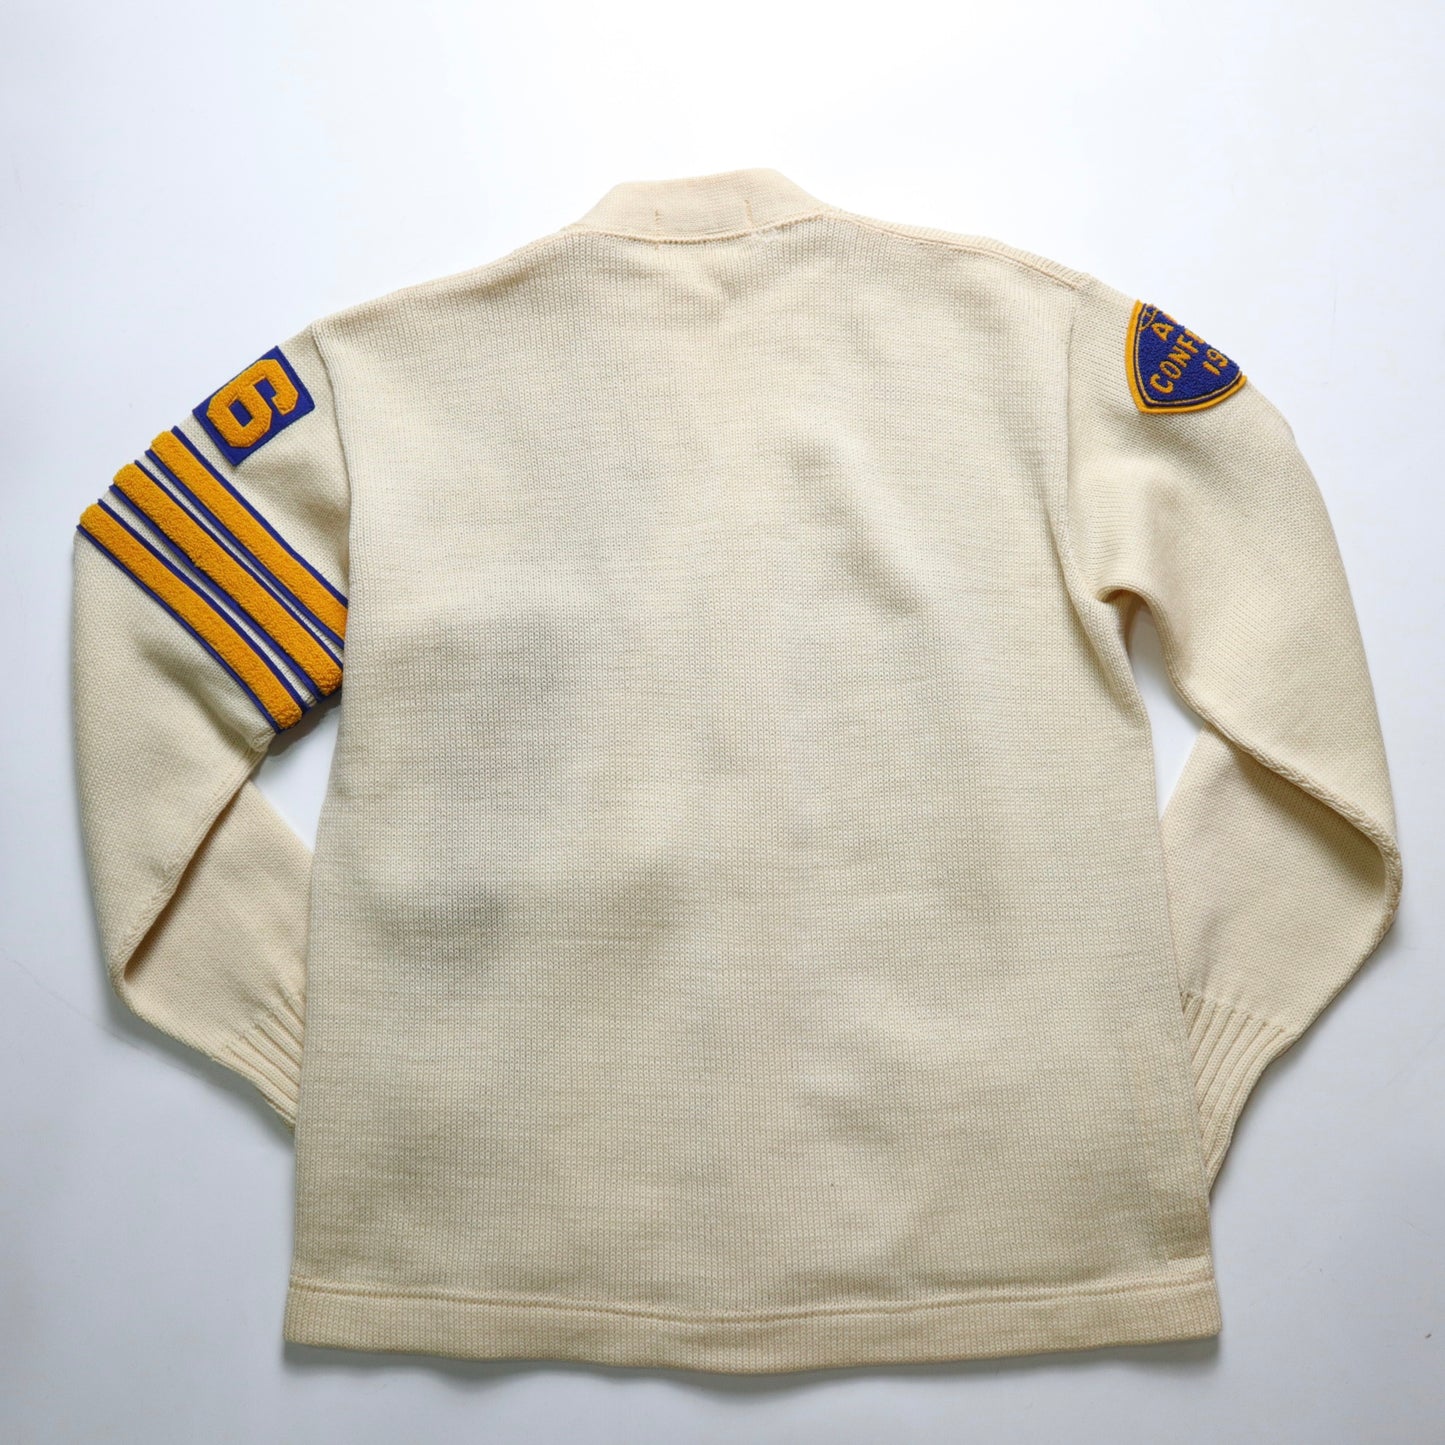 1950年代 IMPERIAL アメリカ人道協会ウールキャンパスニットジャケット アメリカ製